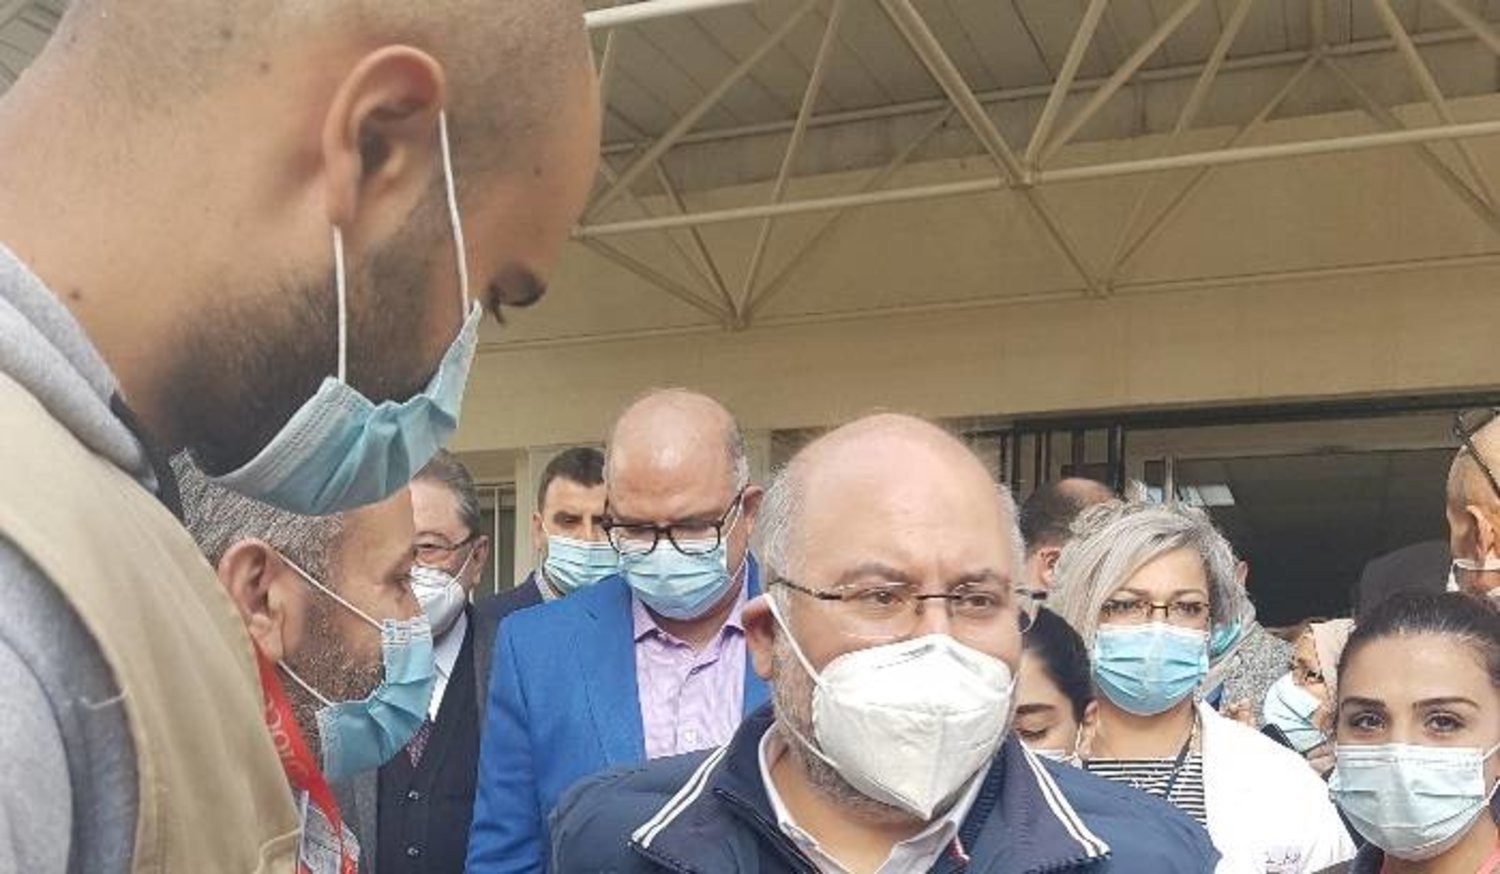 Lübnan Sağlık Bakanı Firas Abyad hastane ziyaretinde bulundu. (NNA)